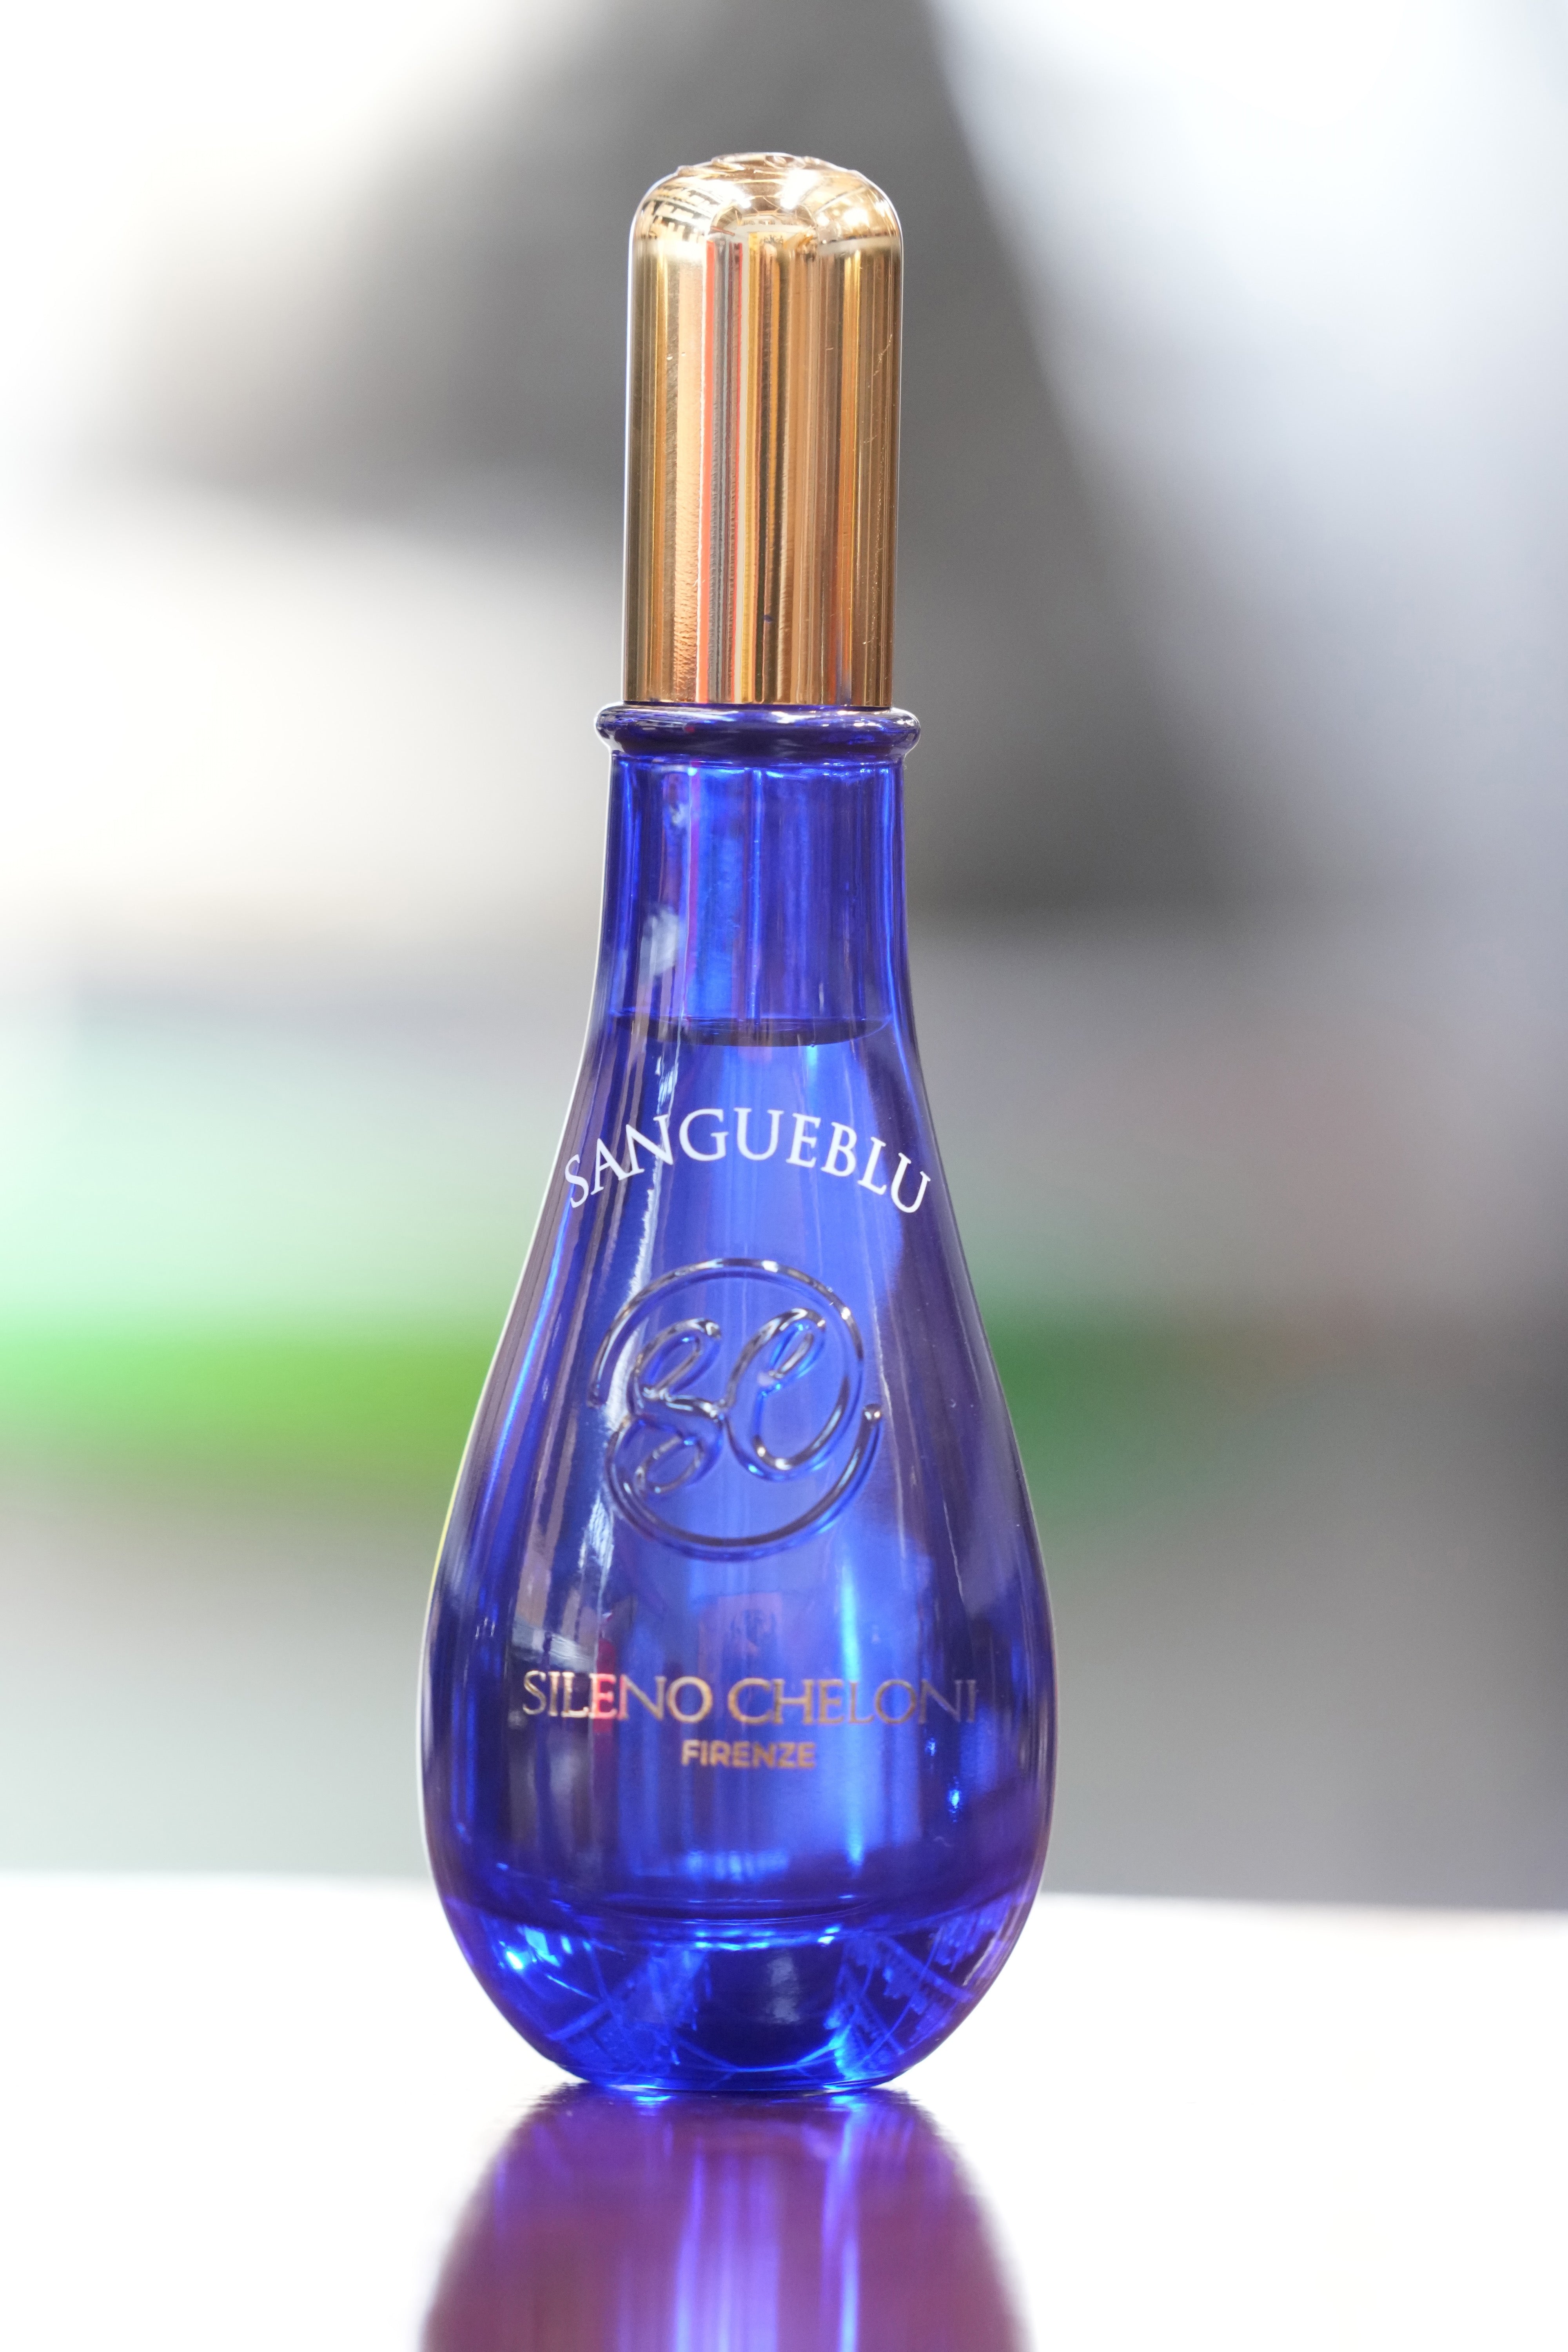 Perfume 'Sangeblu'